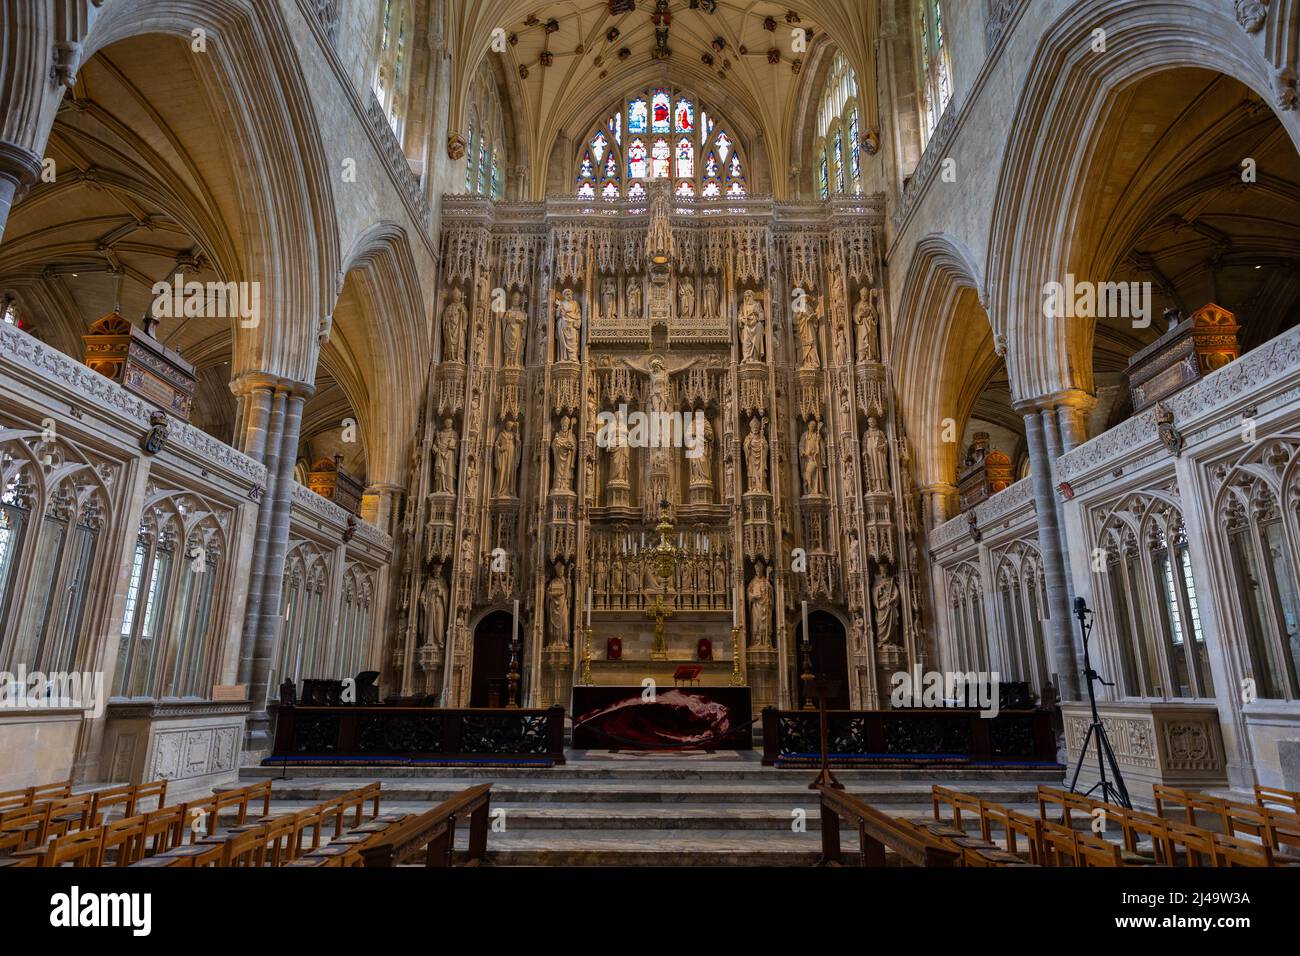 Photos de la célèbre cathédrale de Winchester dans le Hampshire Angleterre . Banque D'Images